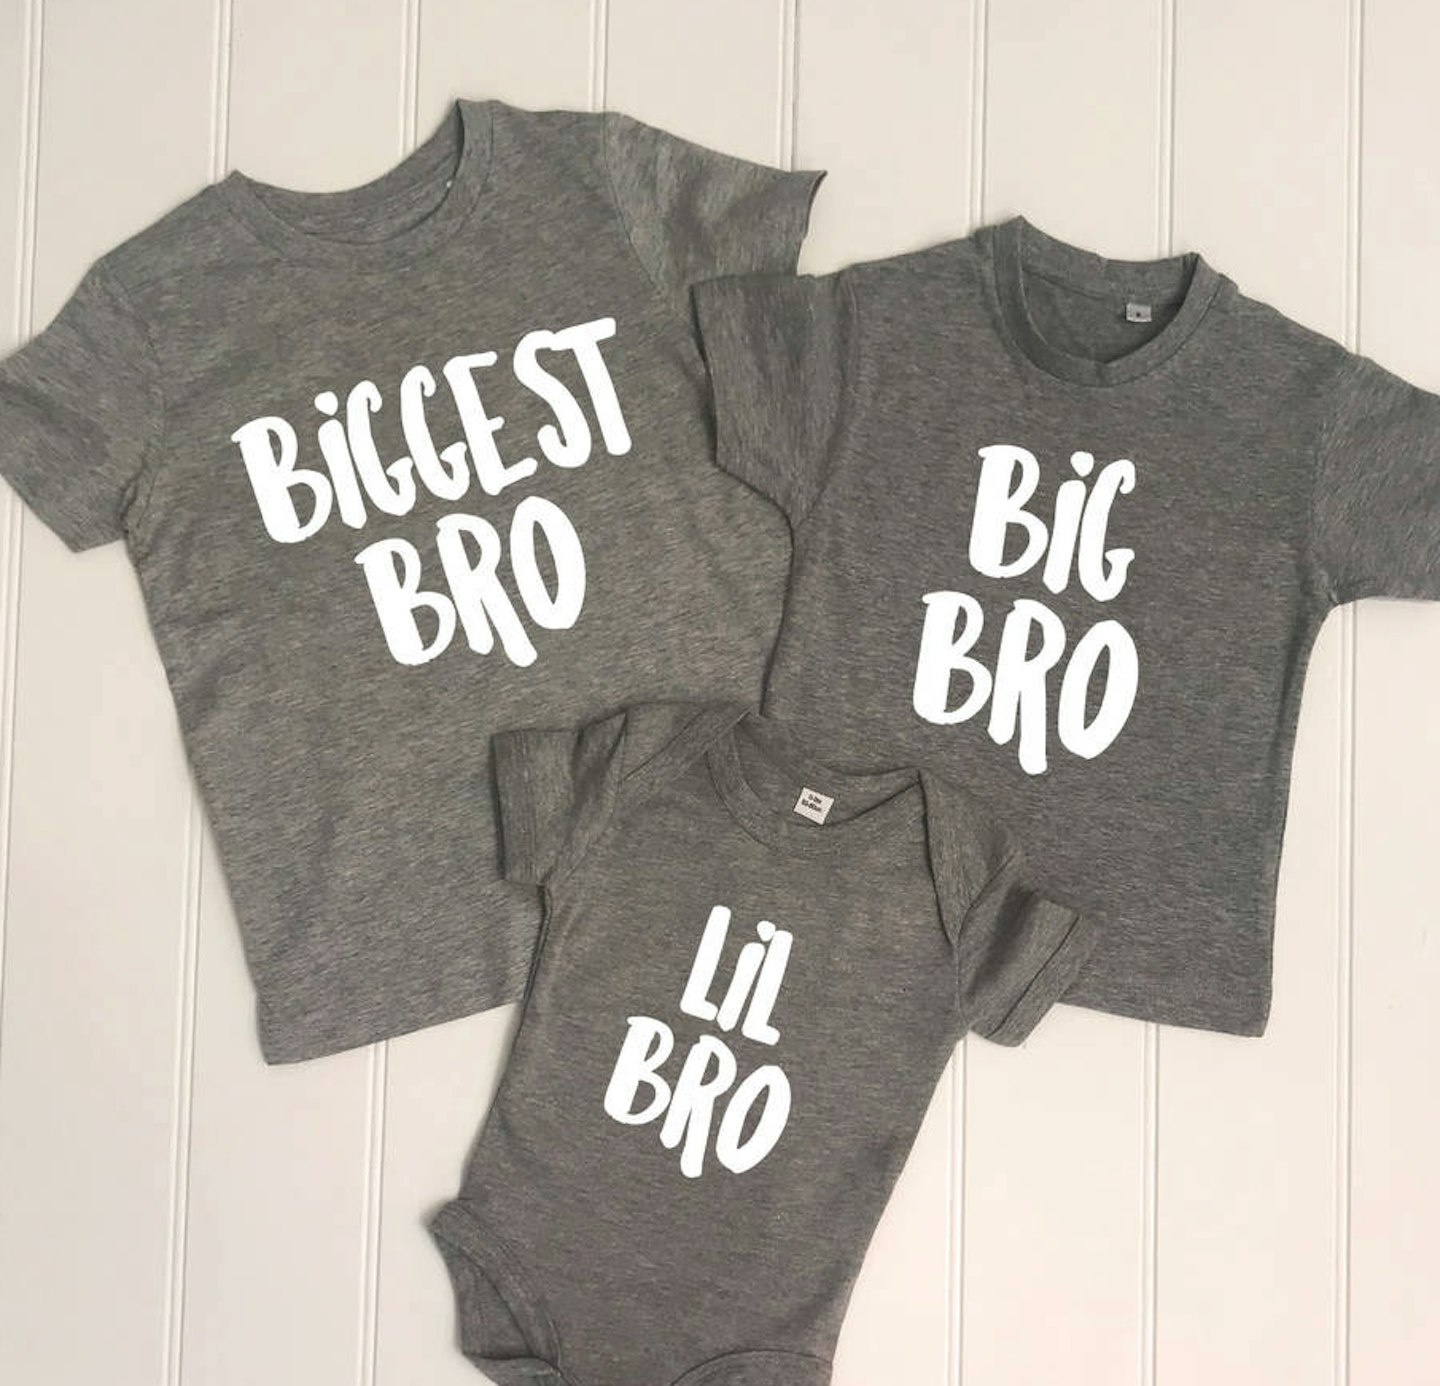 Biggest Bro/Sis, Big Bro/Sis, and Lil Bro/Sis Sibling T-shirts, on sale for u00a327.30 for the set 